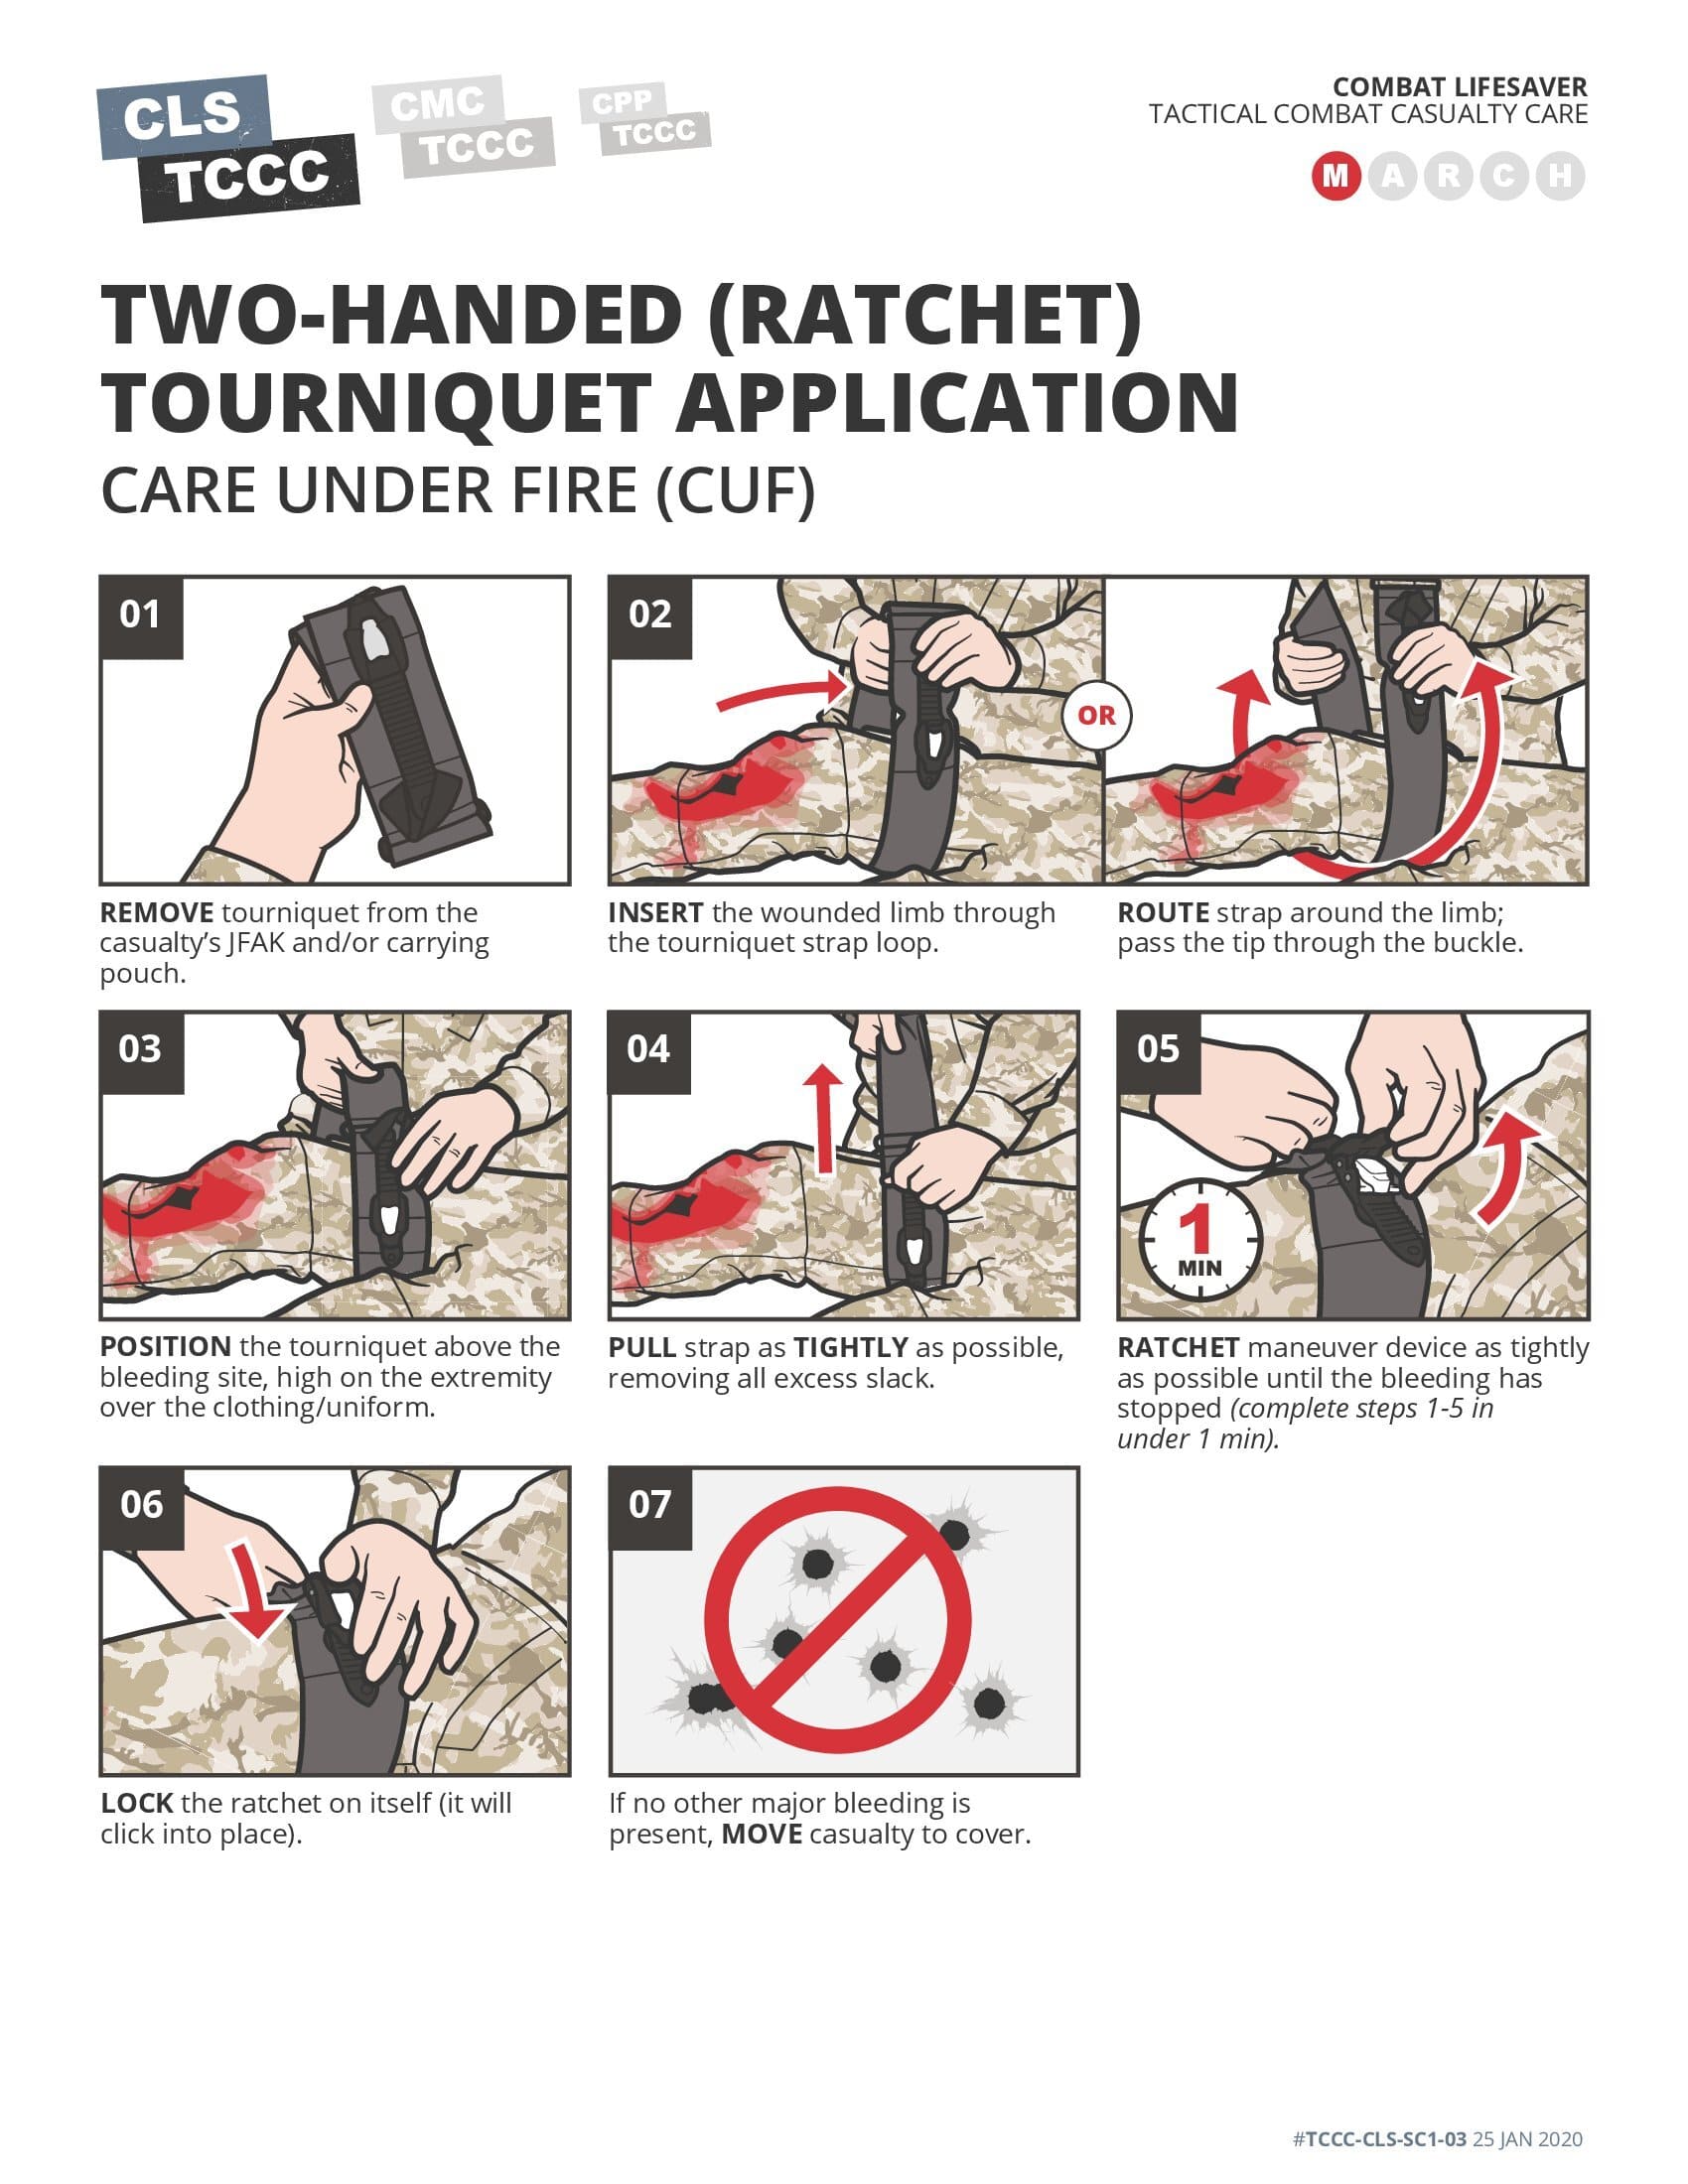 Two-Handed Ratchet Tourniquet